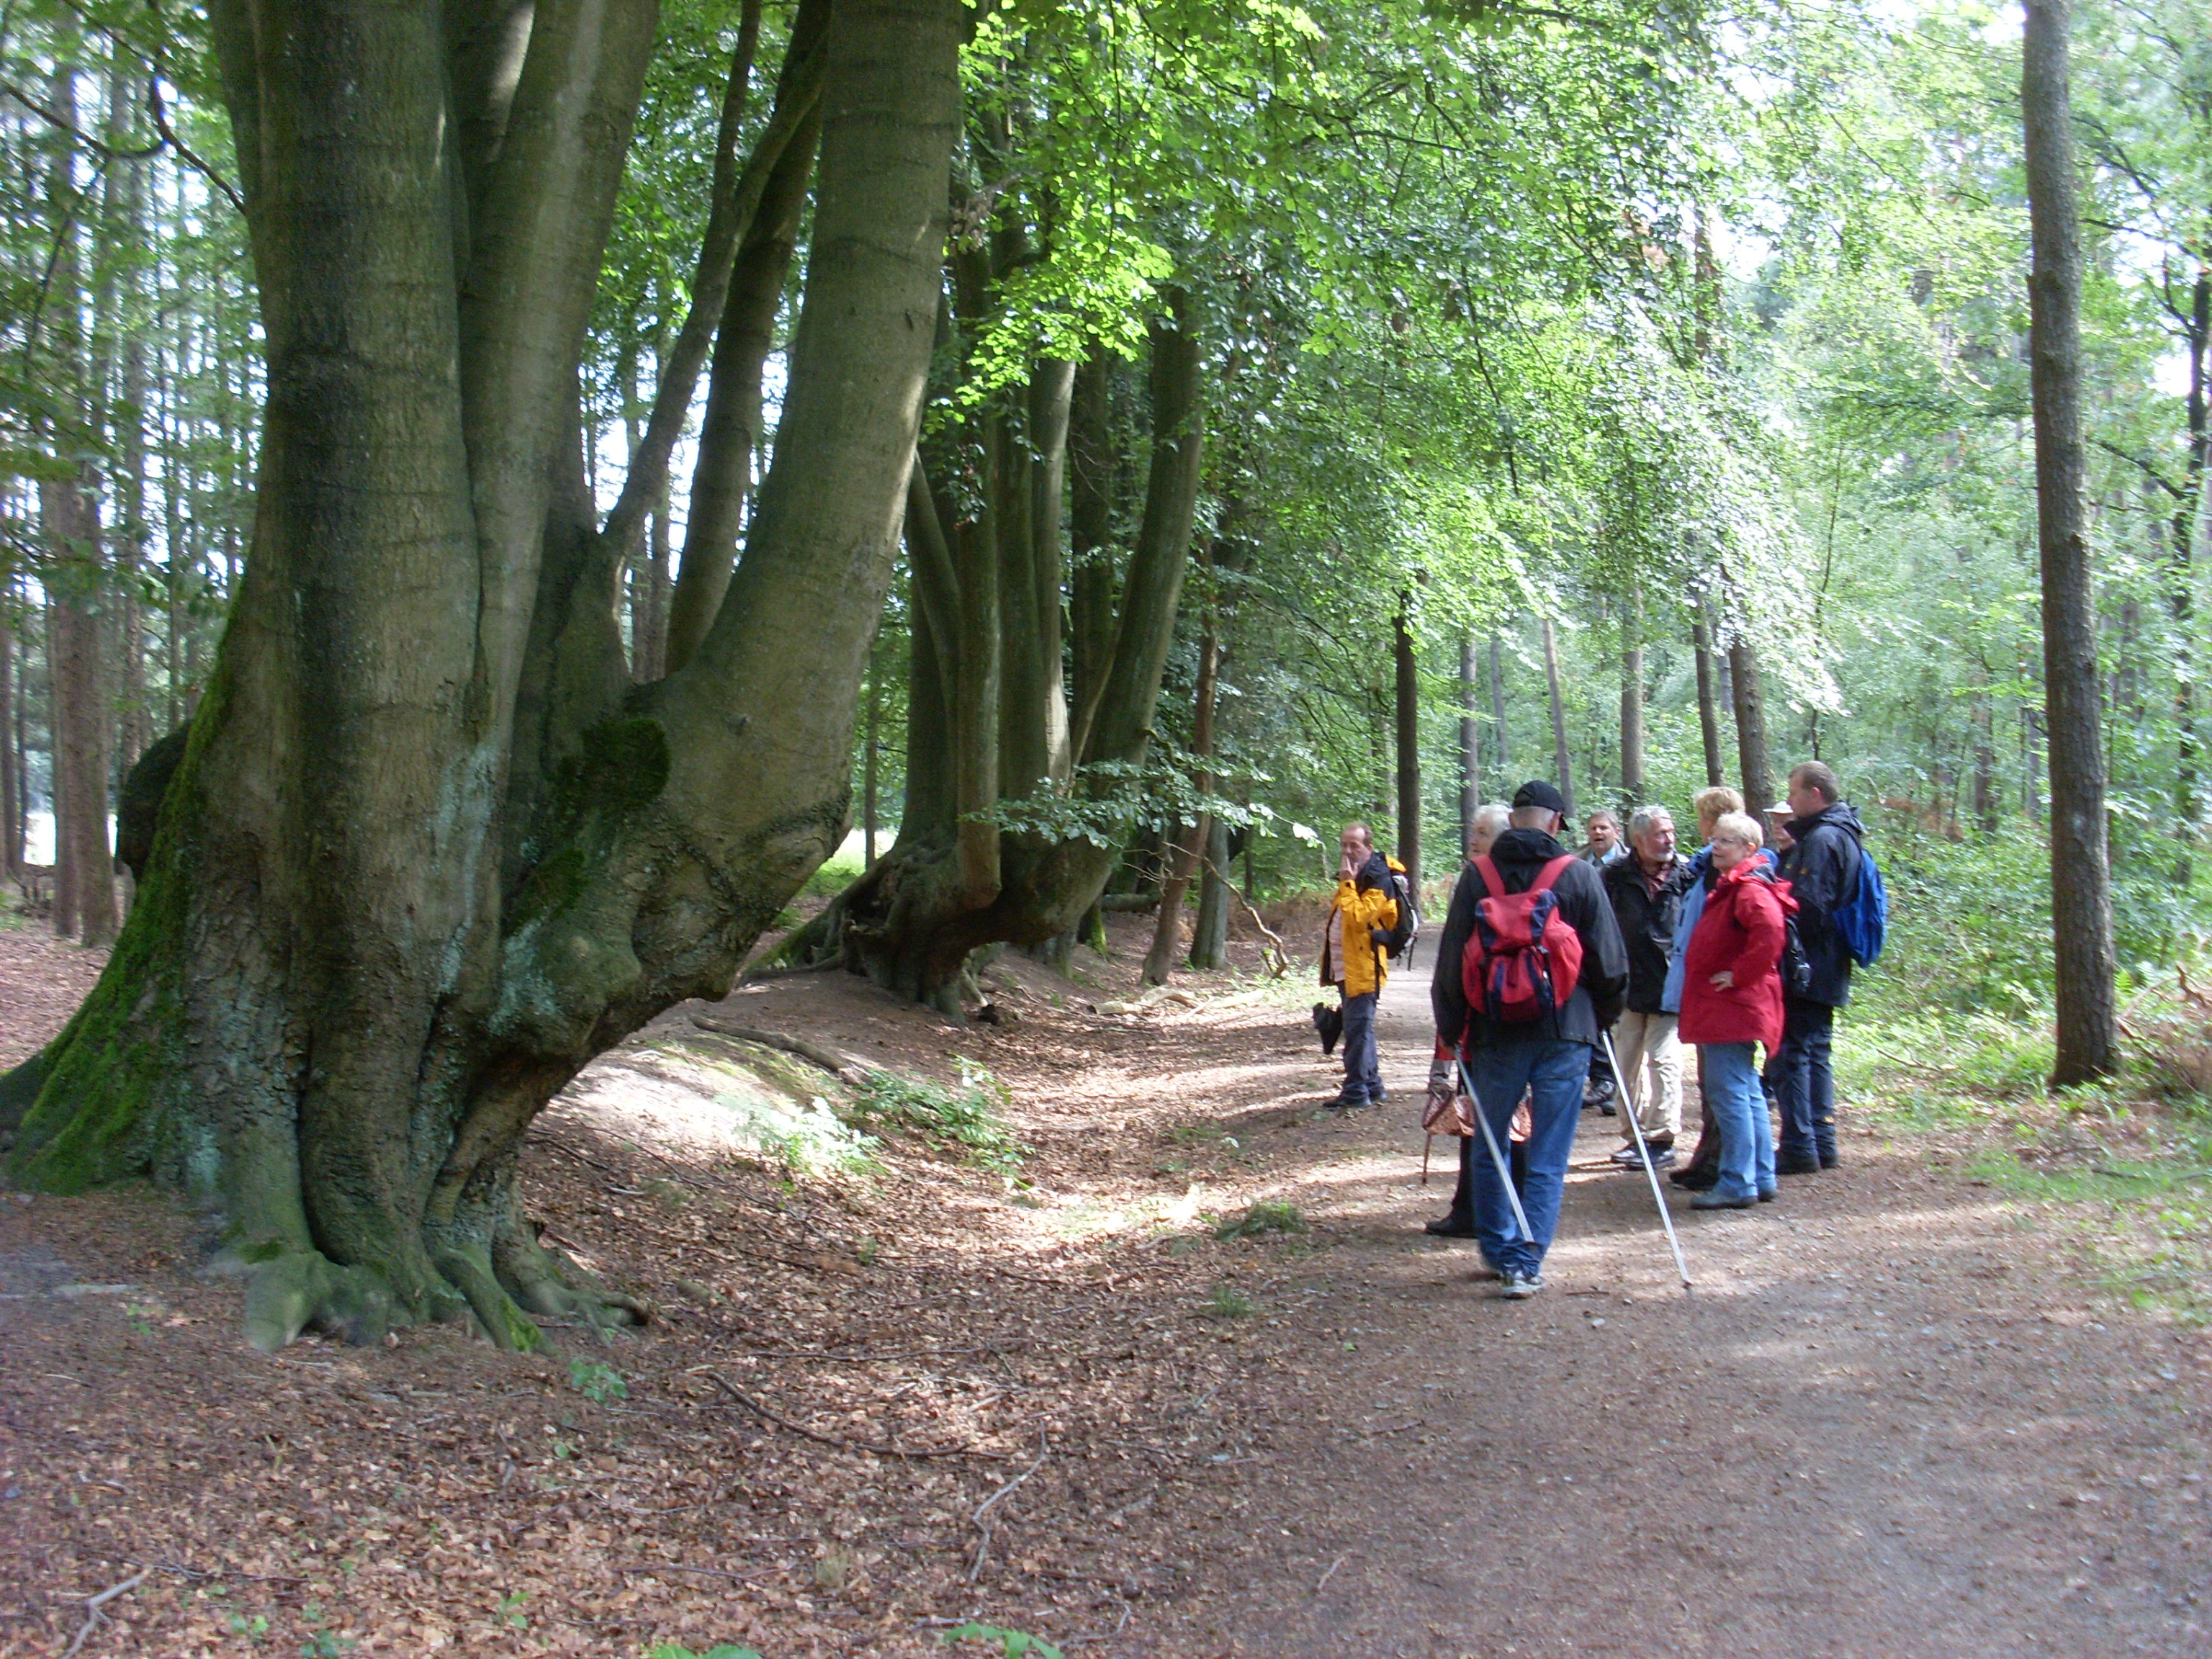 Rotbuchenwall im RVR-Waldgebiet Haard mit einer Wandergruppe.